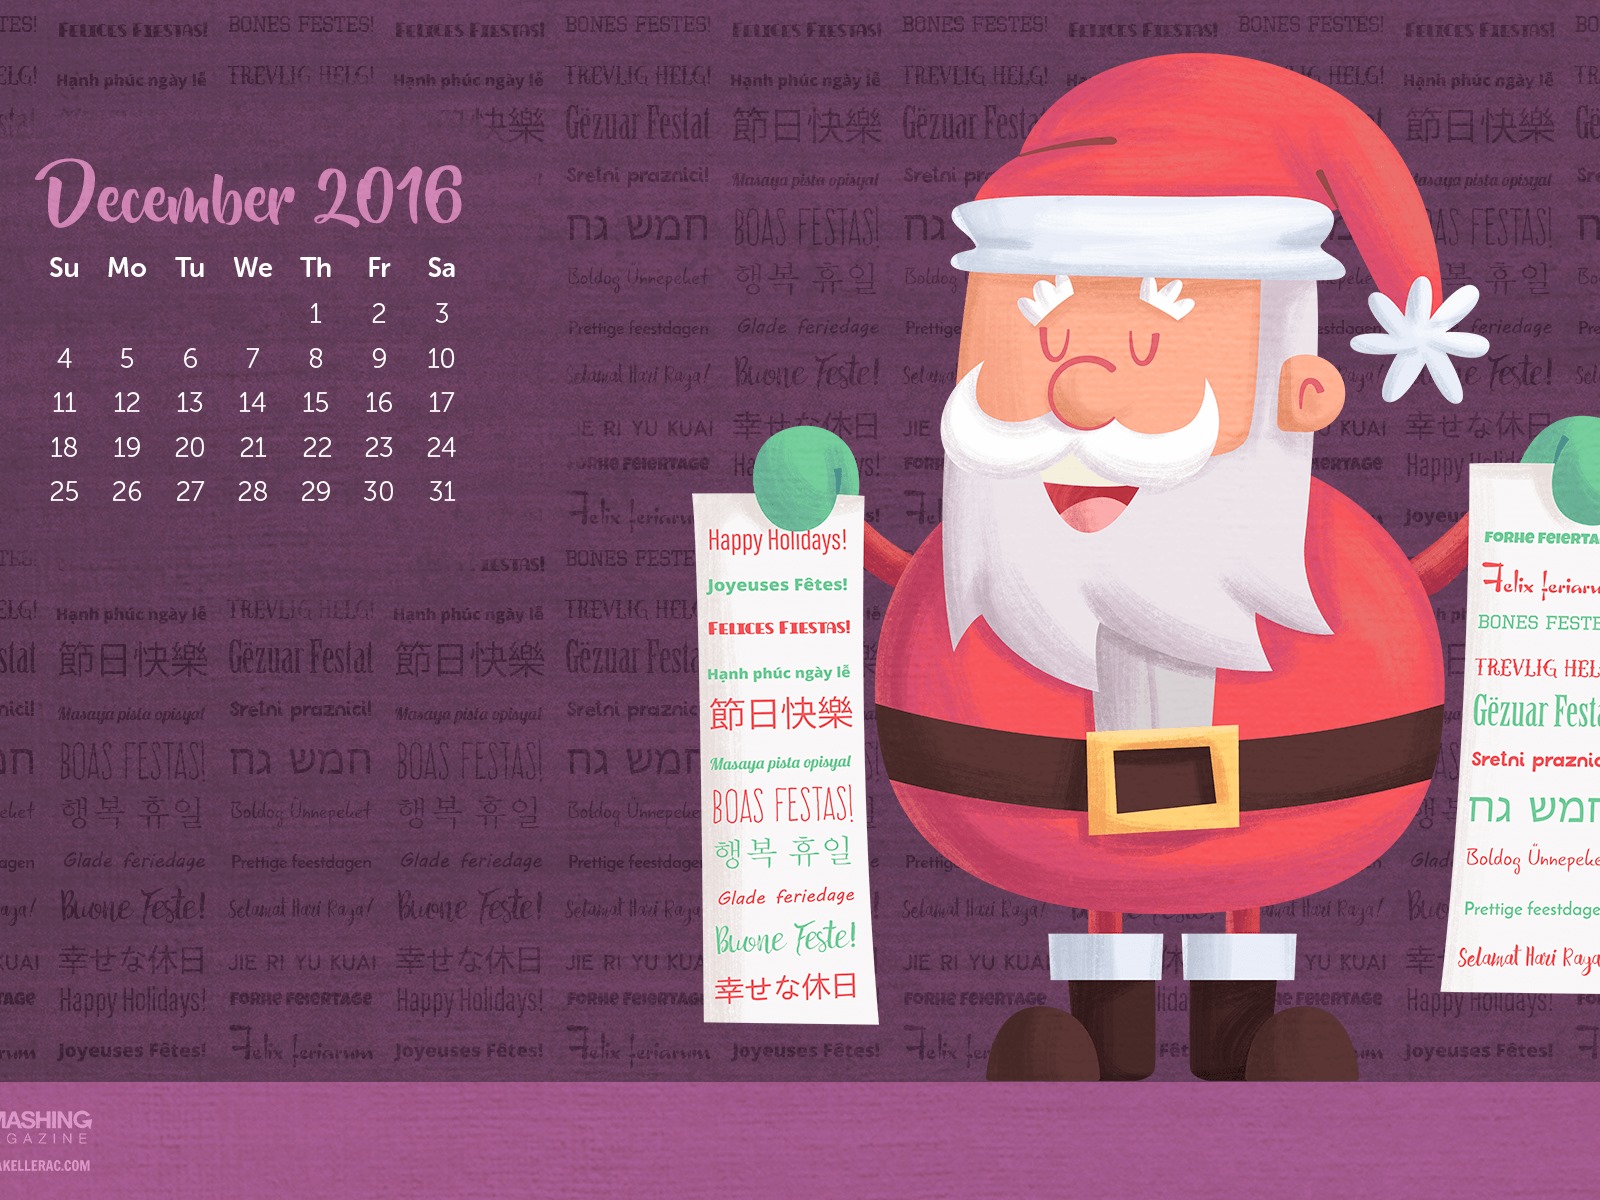 December 2016 Christmas theme calendar wallpaper (1) #24 - 1600x1200